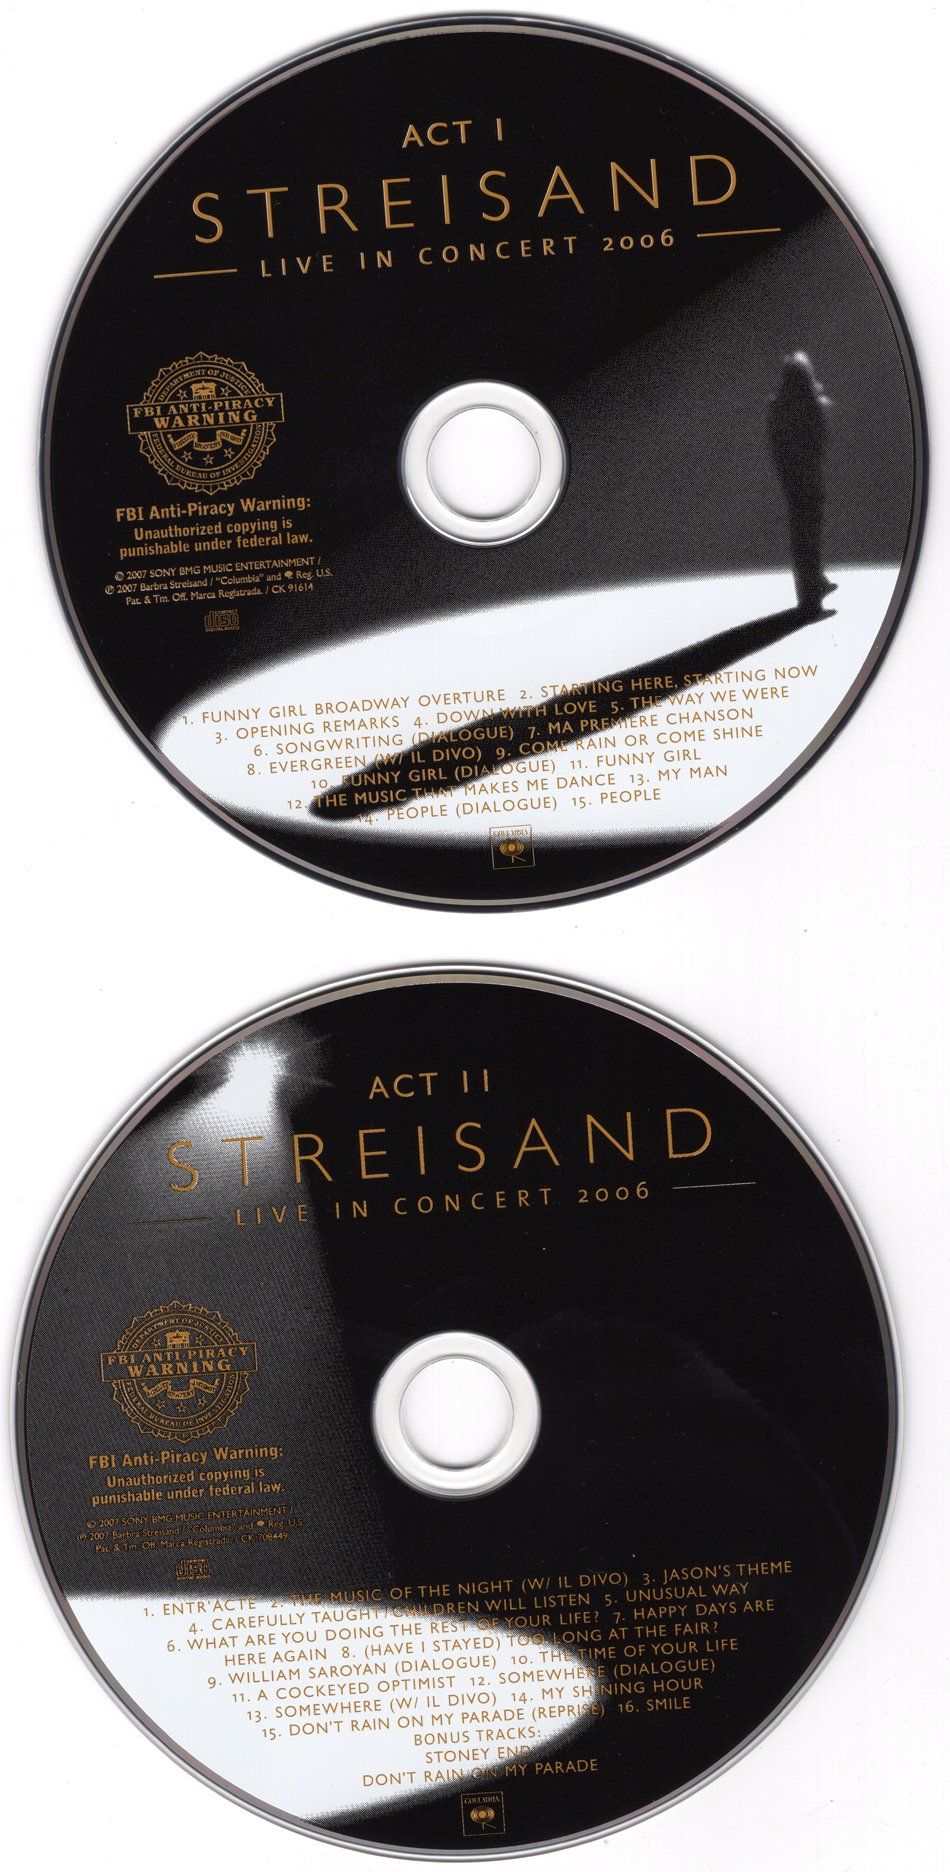 Live 2006 CDs